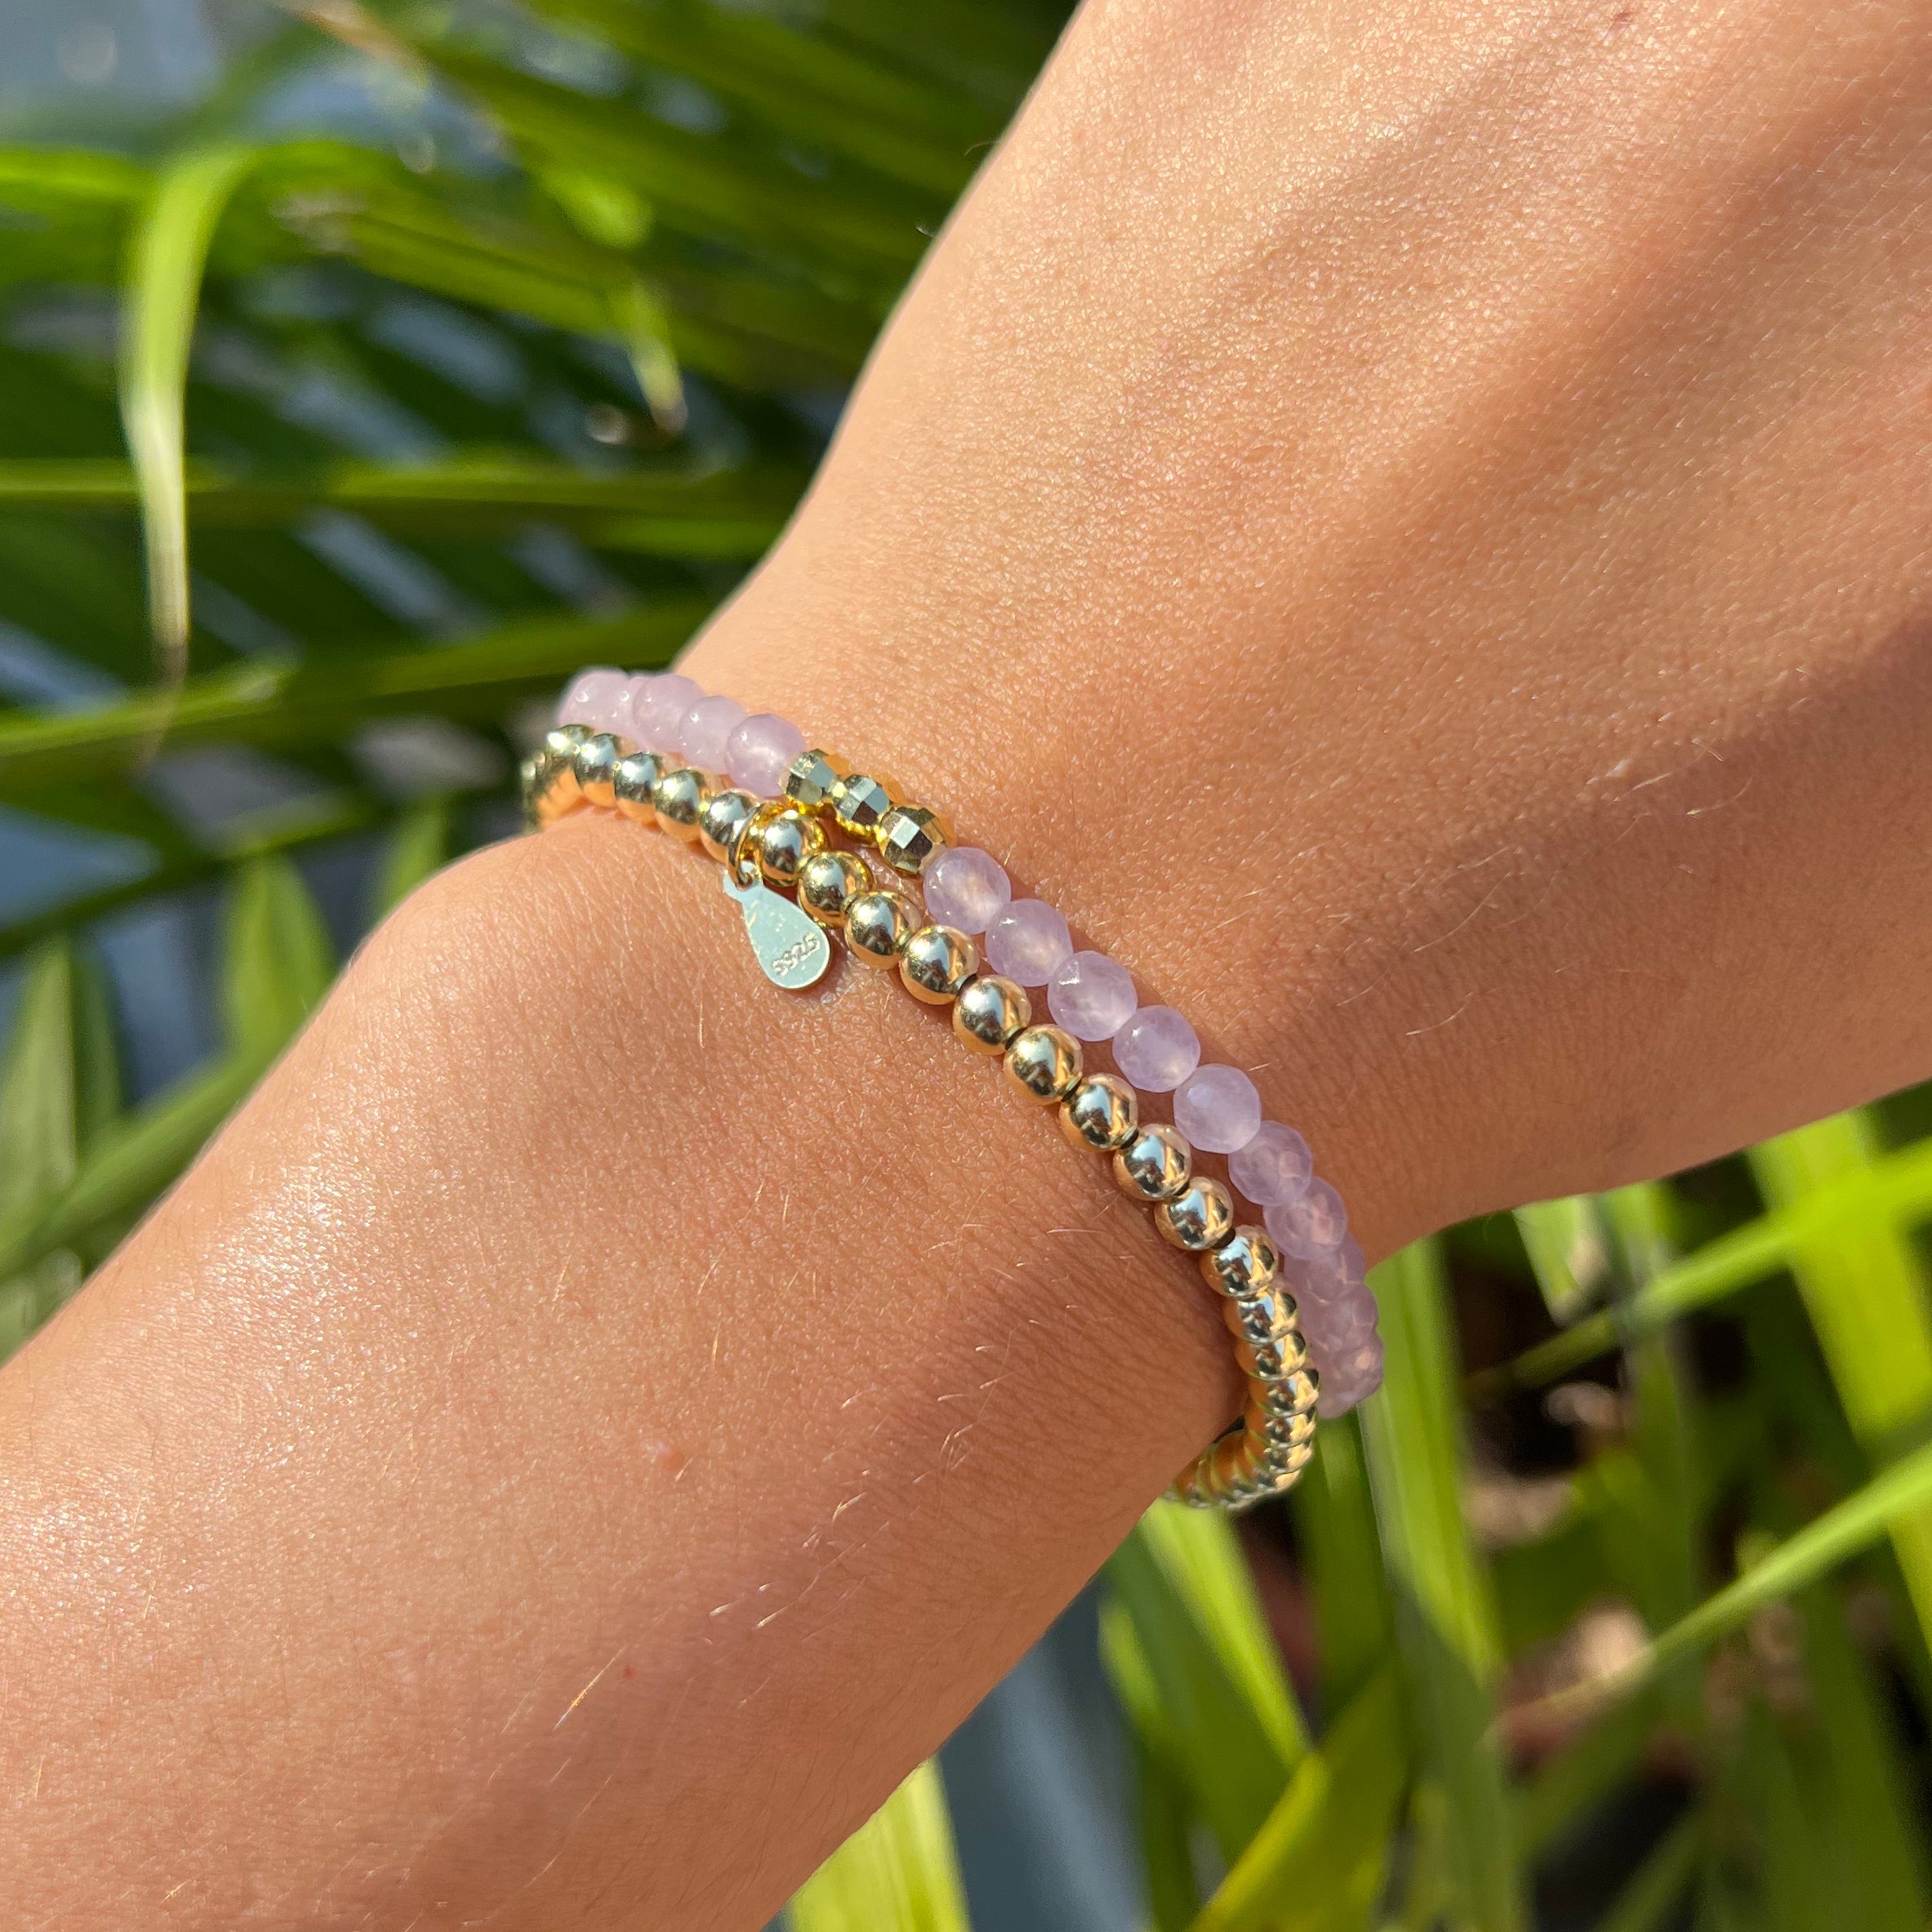 Darjeeling Bracelet - Silver | Love bracelets, Silver bracelets, Charity  bracelet